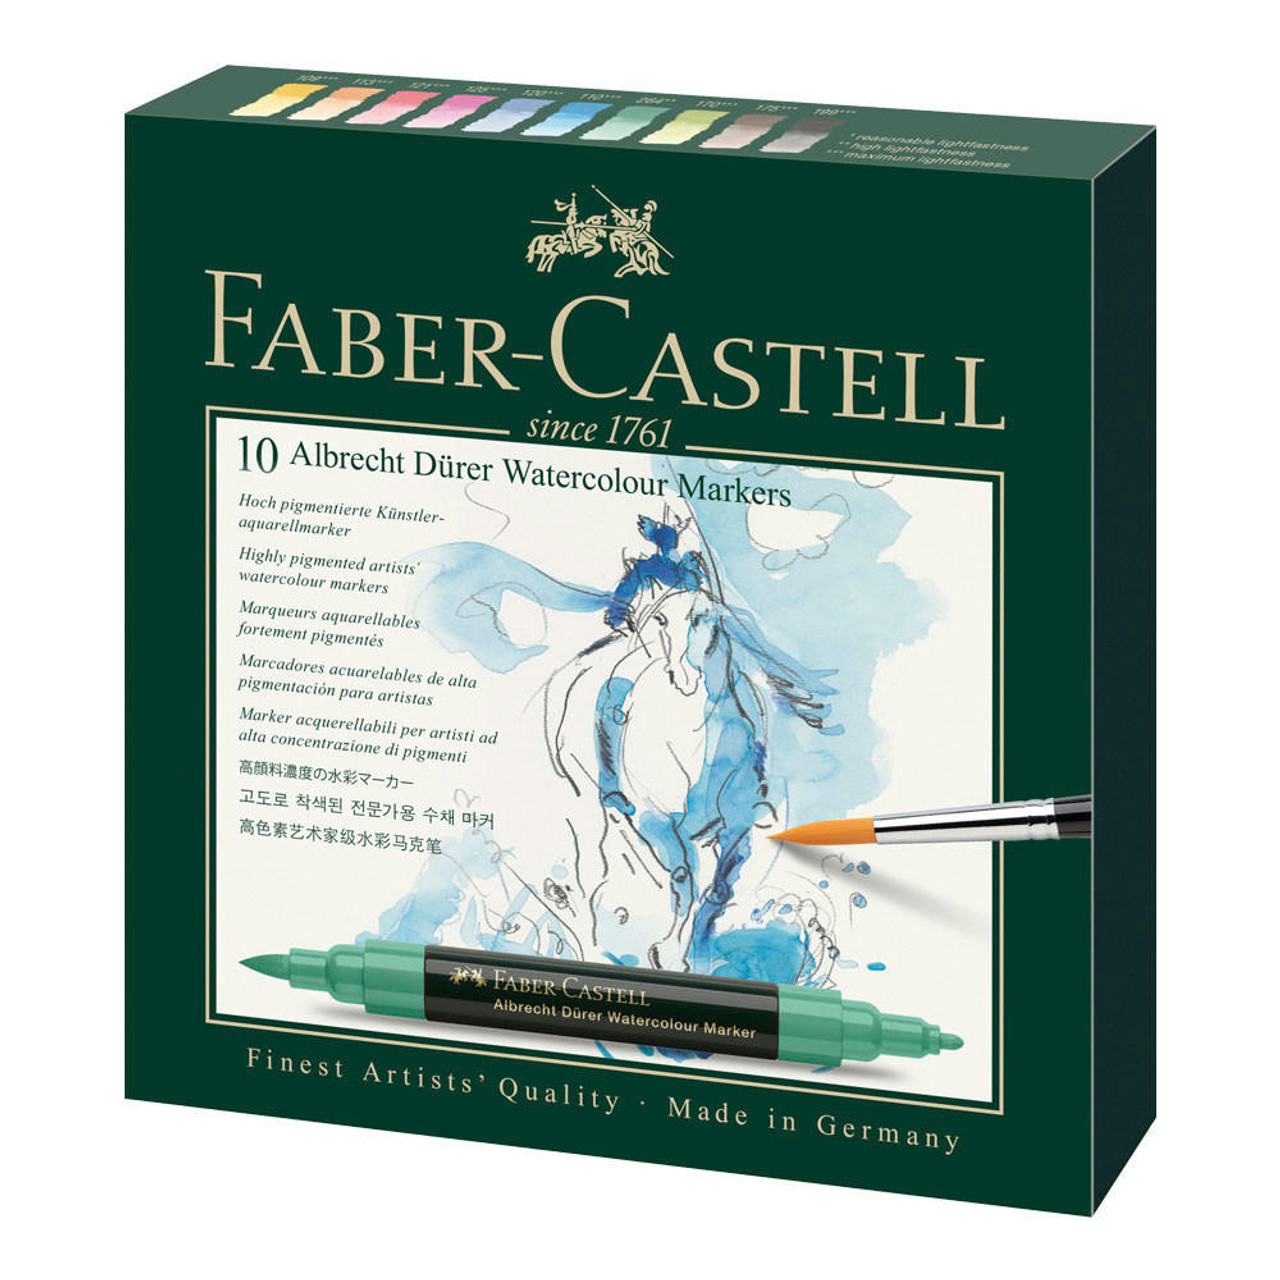 Faber-Castell Albrecht Durer Artist Watercolor Markers